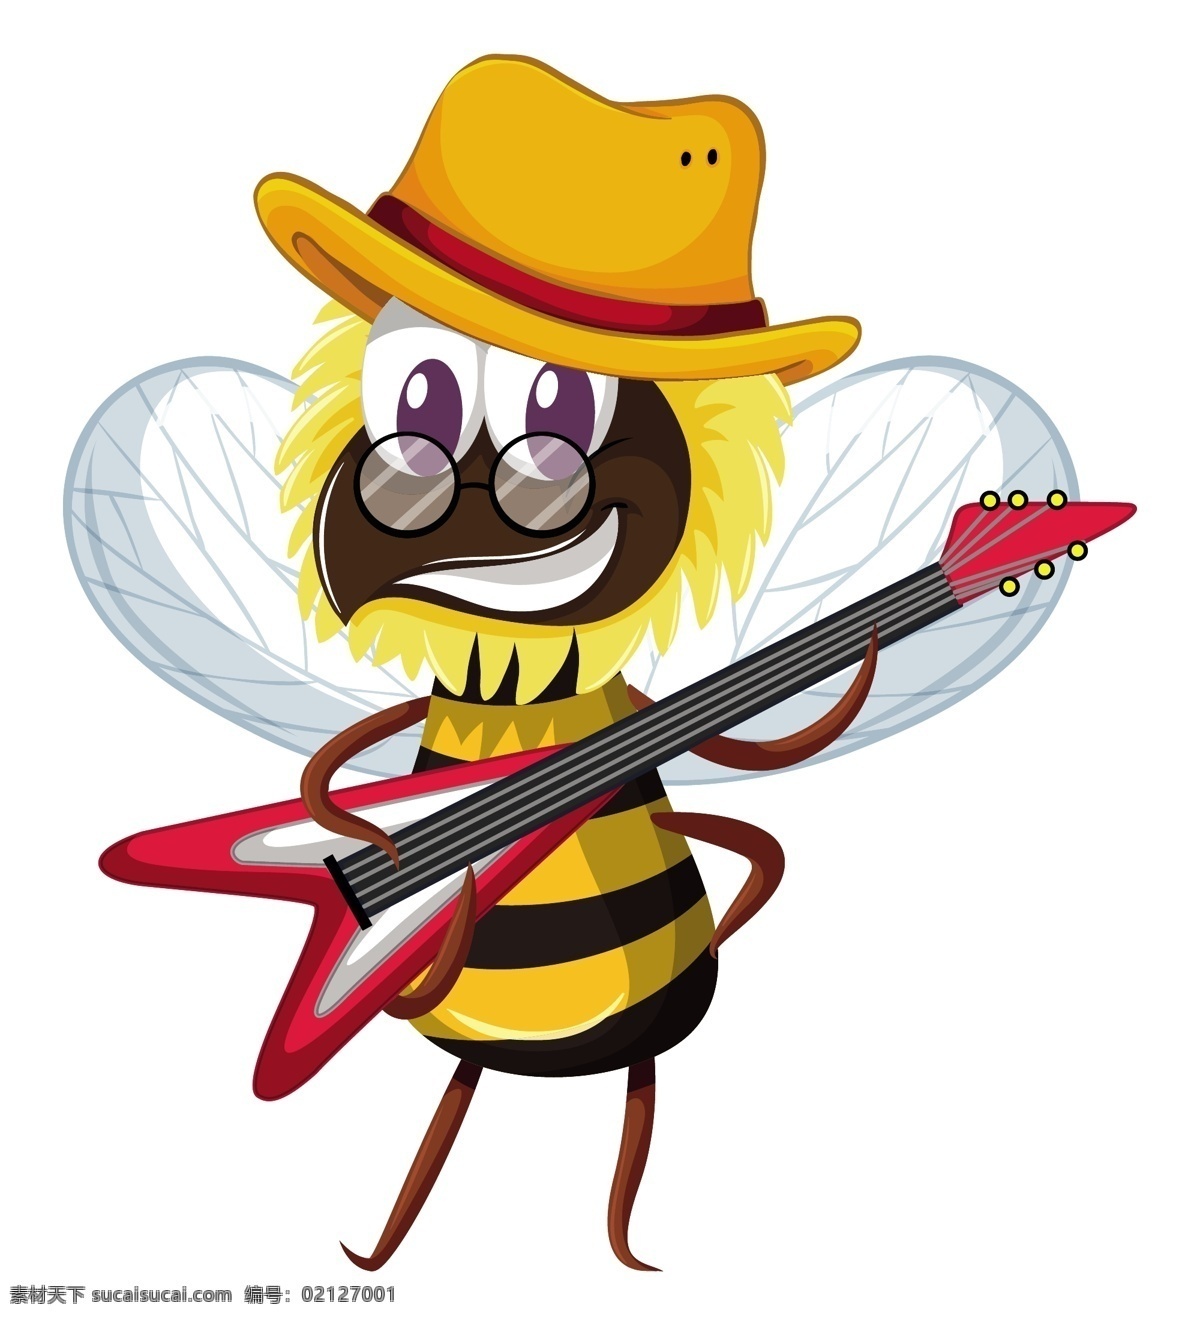 卡通蜜蜂 蜜蜂 昆虫 学科 蜜糖 动物 生物 蜂窝 翅膀 树 甜 花蜜 热带 飞行 采蜜 卡通动物生物 卡通设计